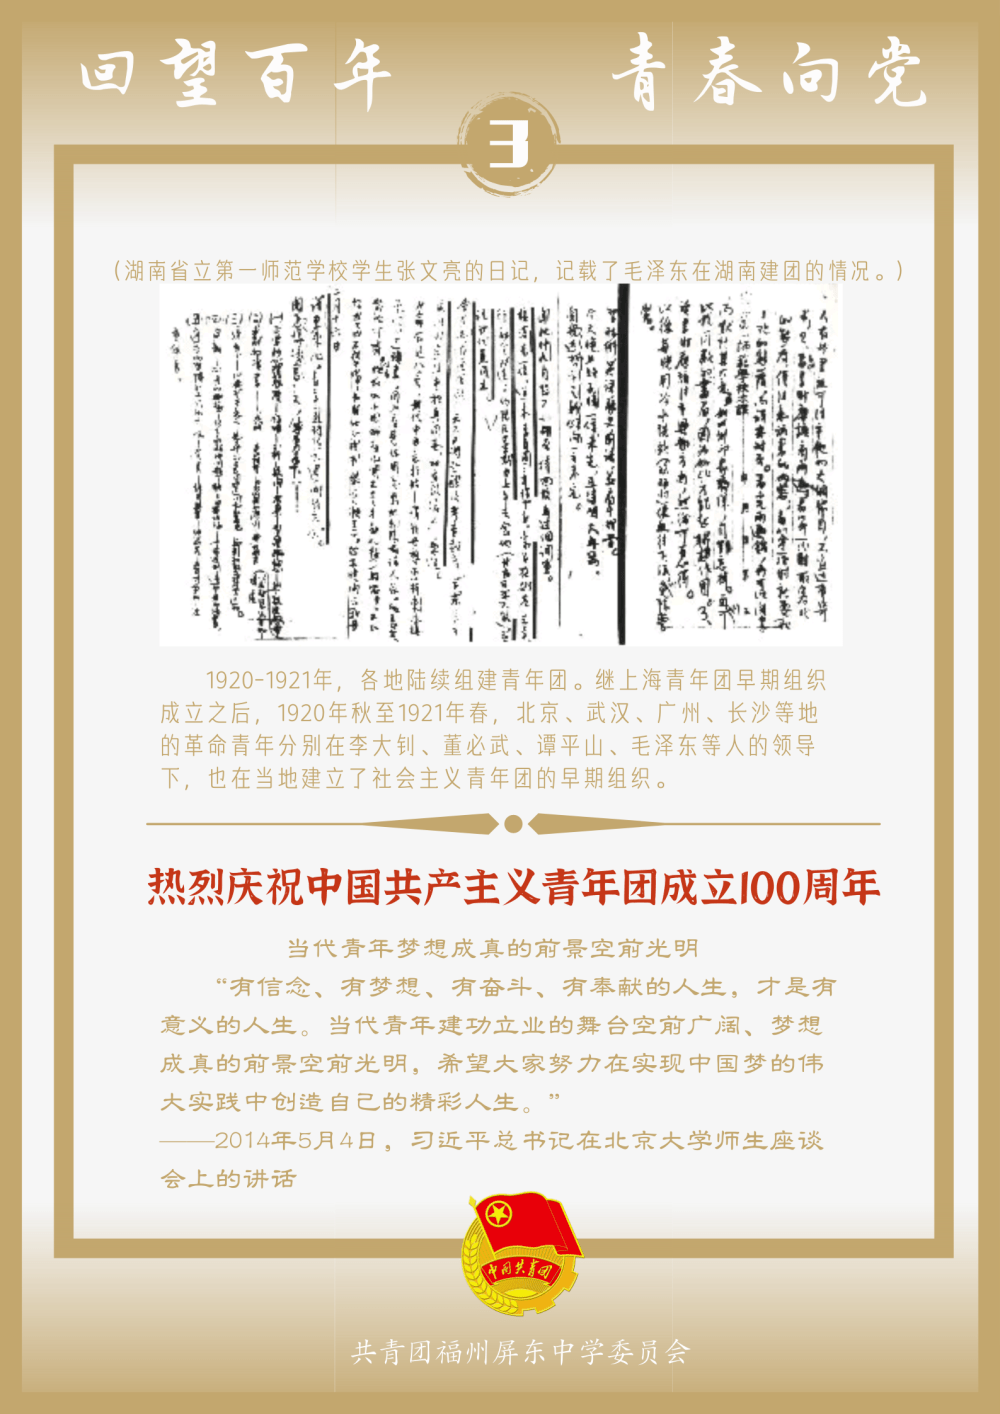 屏东团校68屏东学子原创团史学习系列海报①